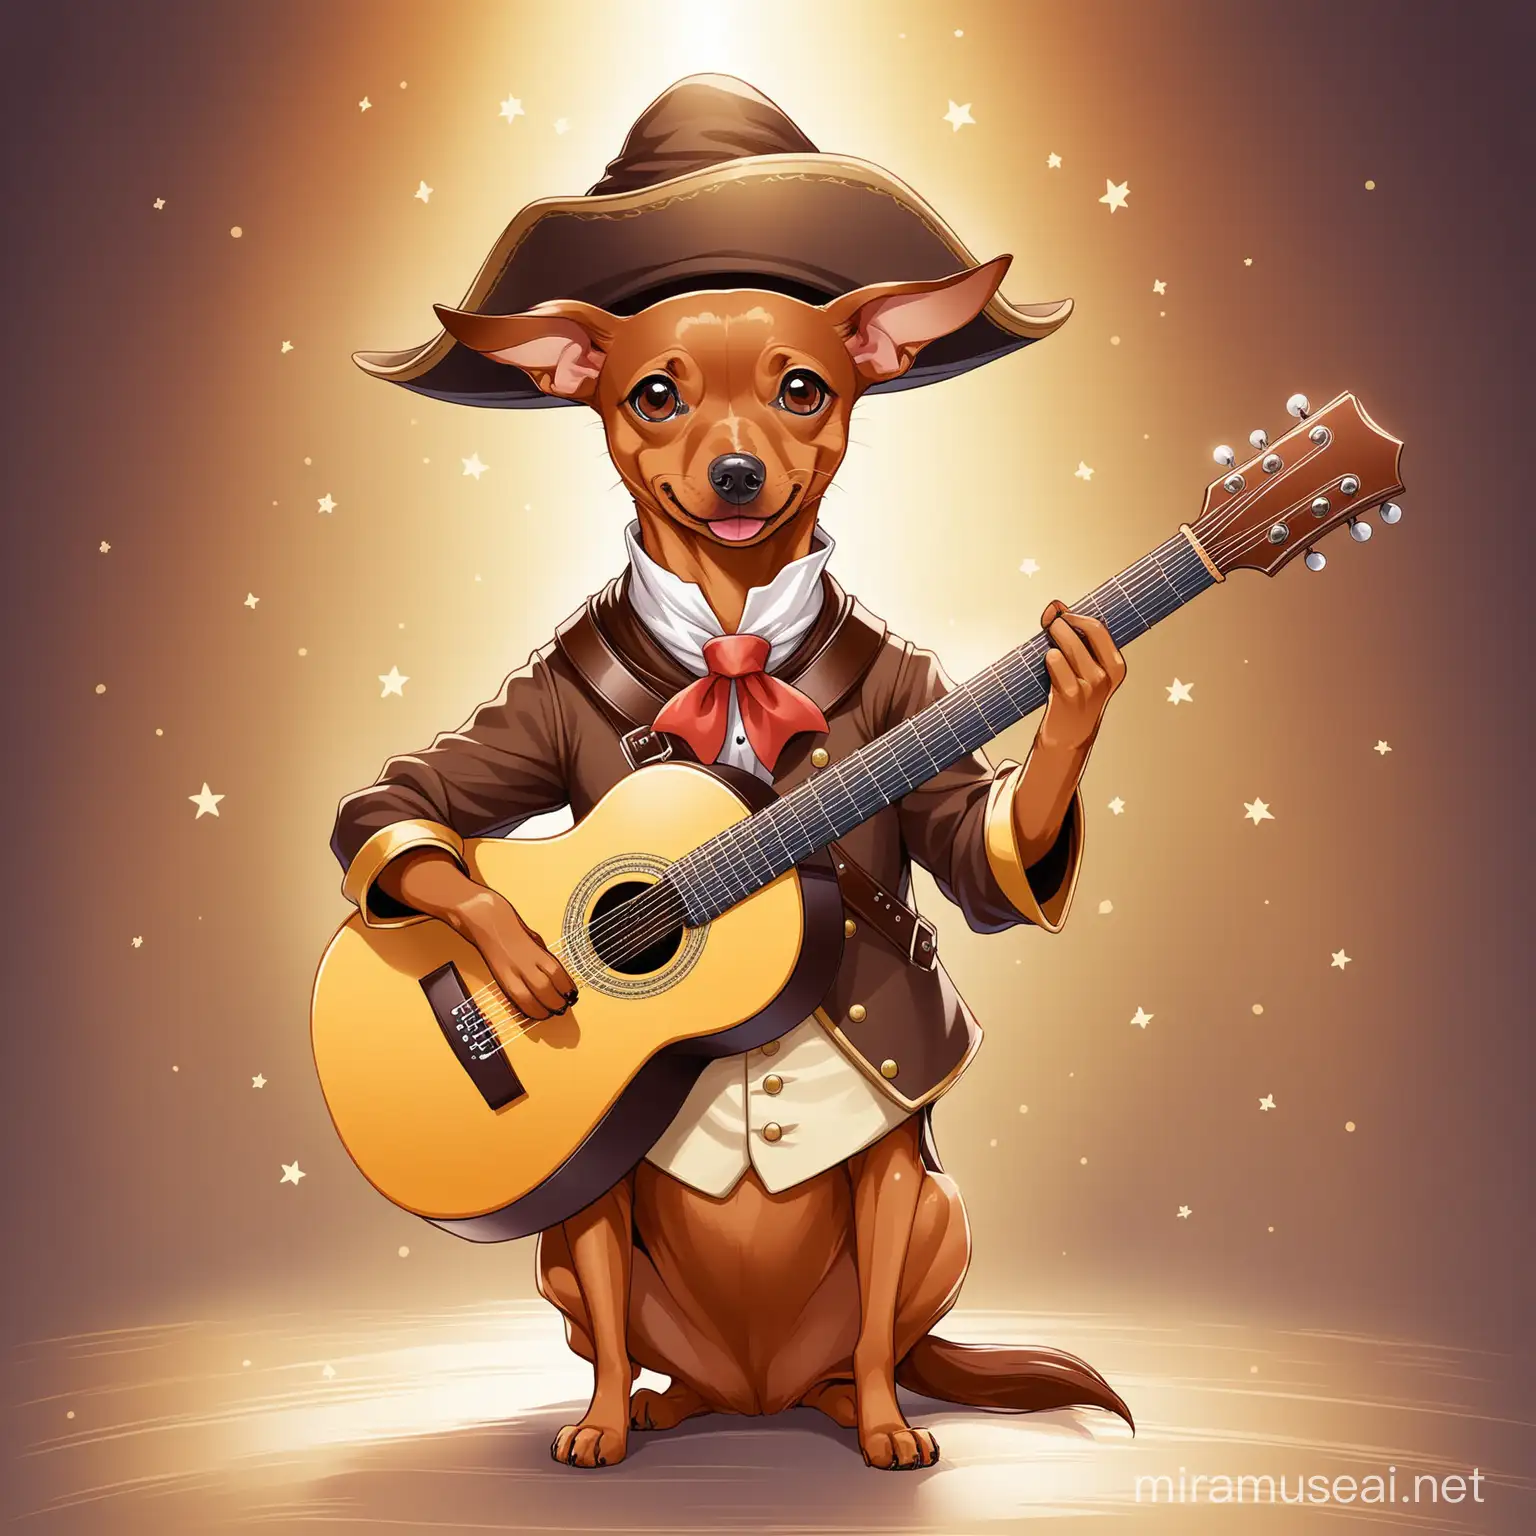 Playful Bard Costume Light Brown Pinscher Dog with Guitar